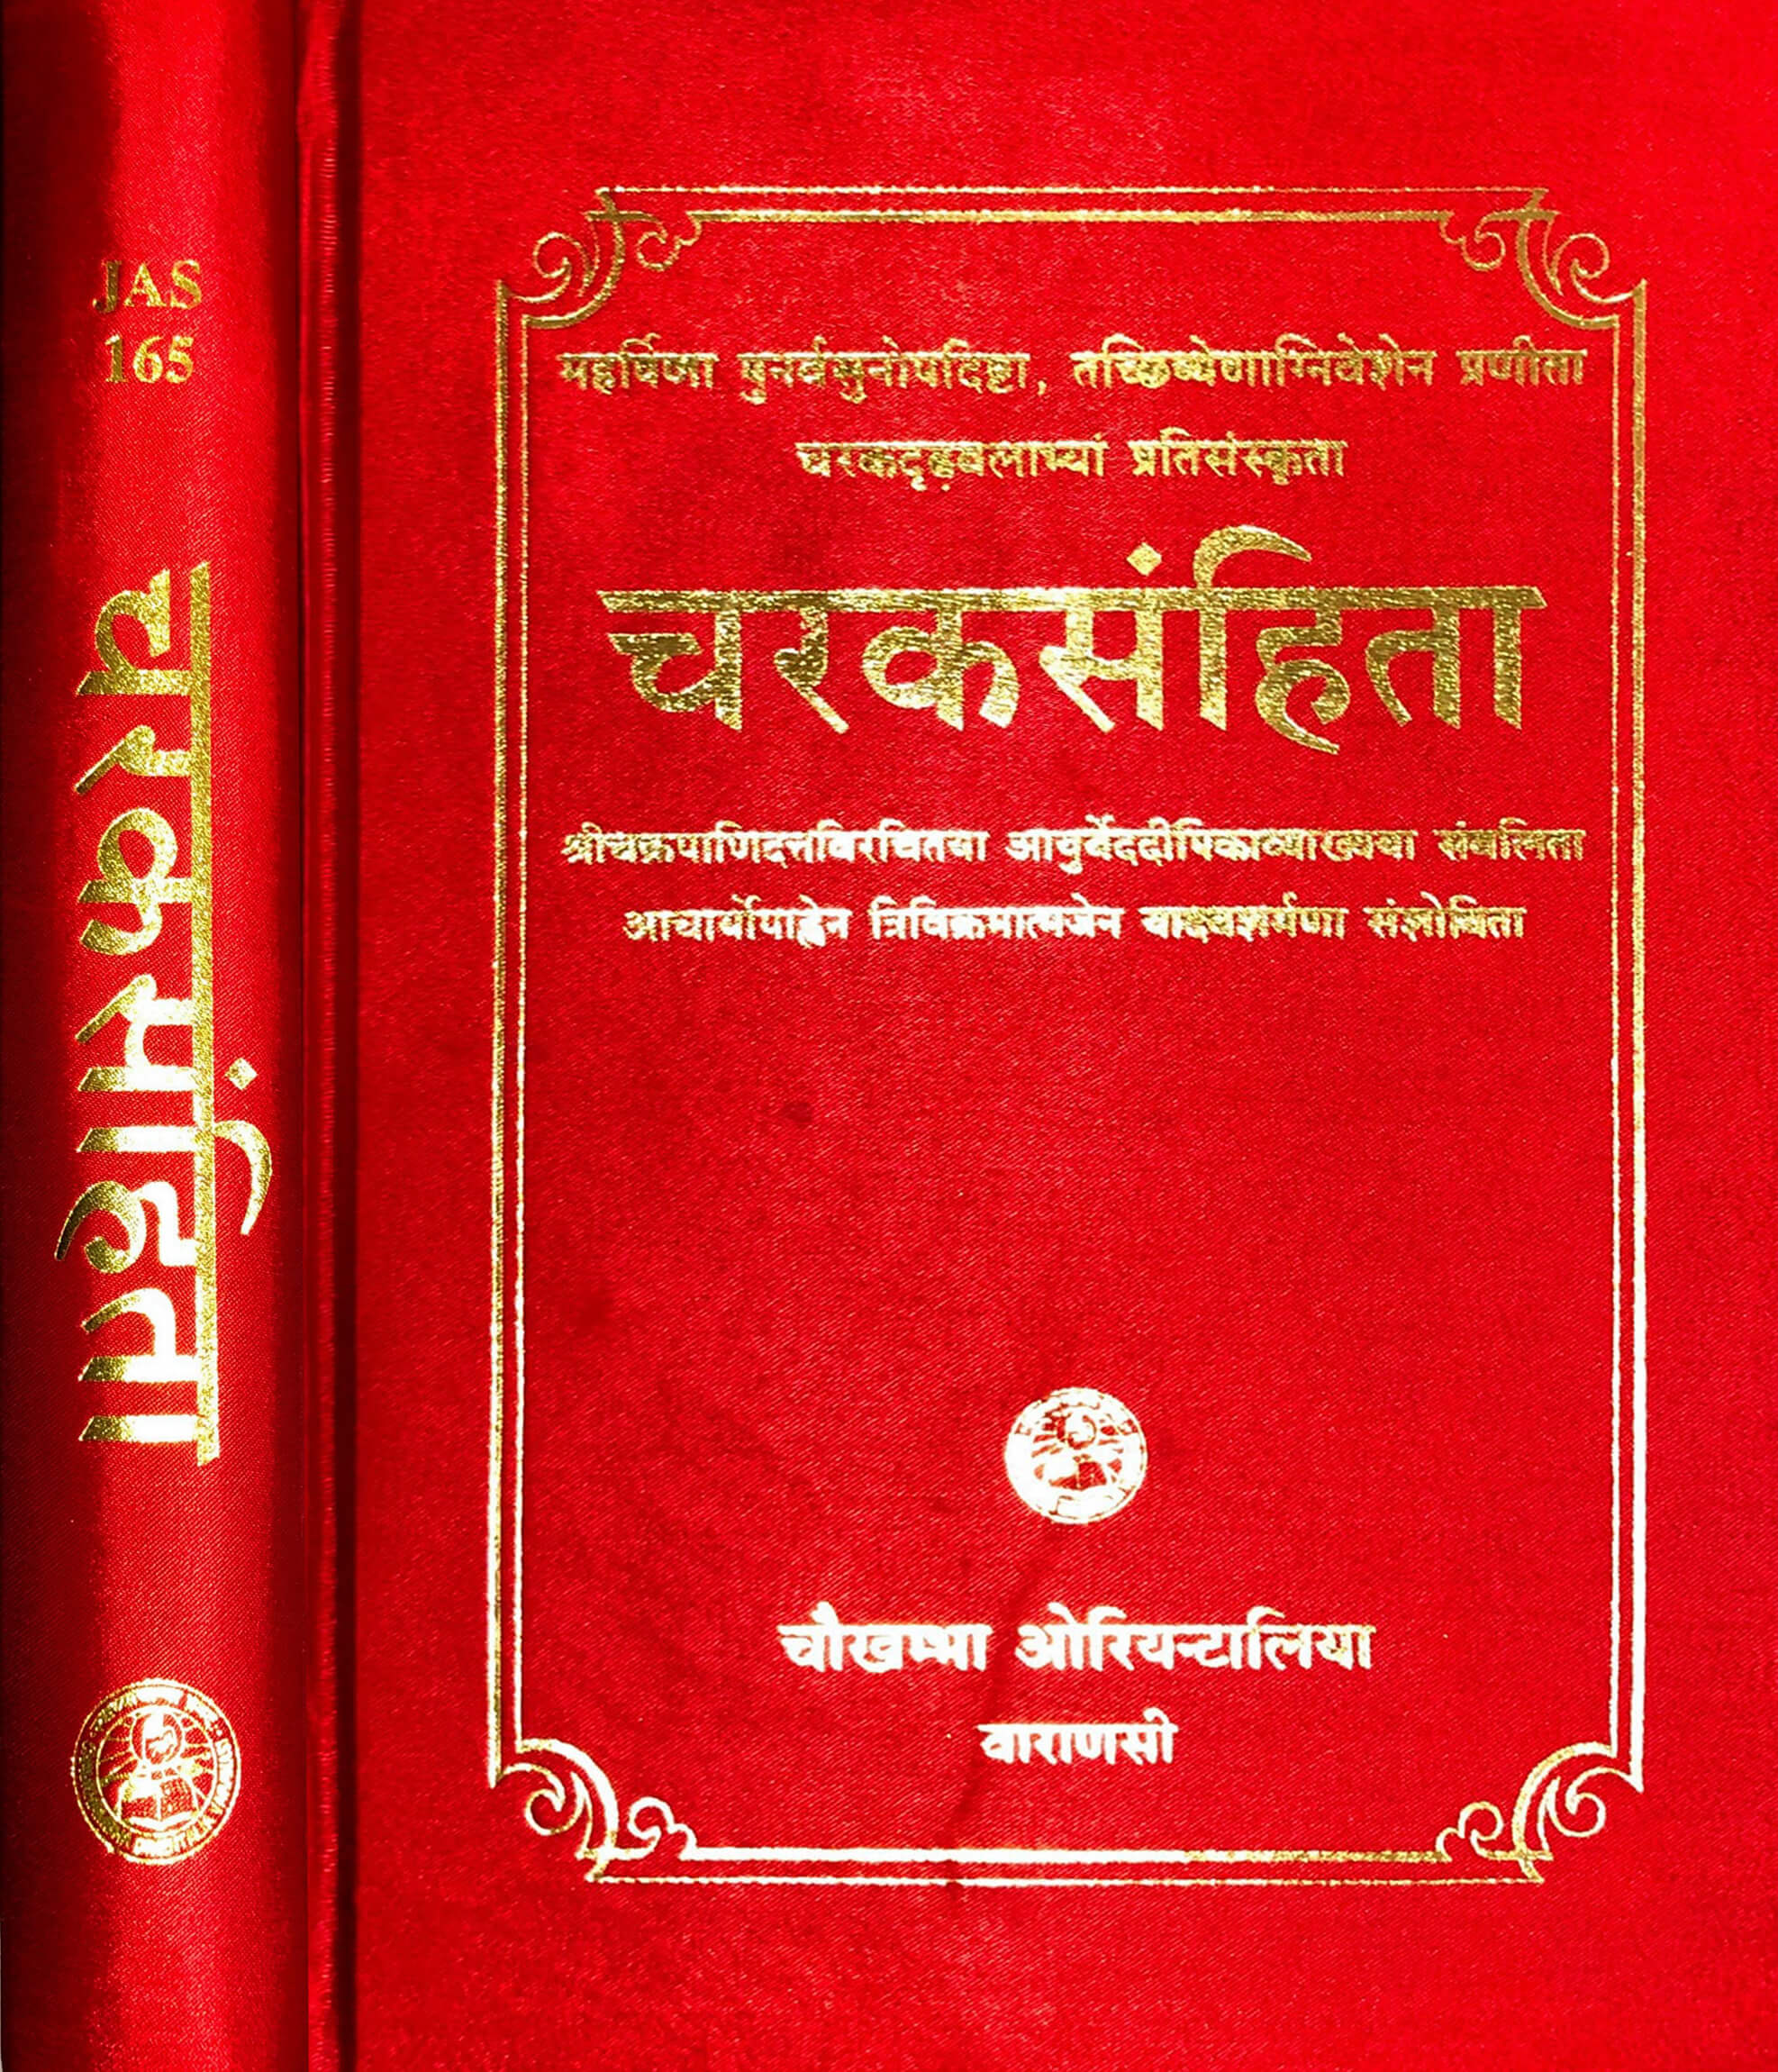 Charaka Samhita In Sanskrit